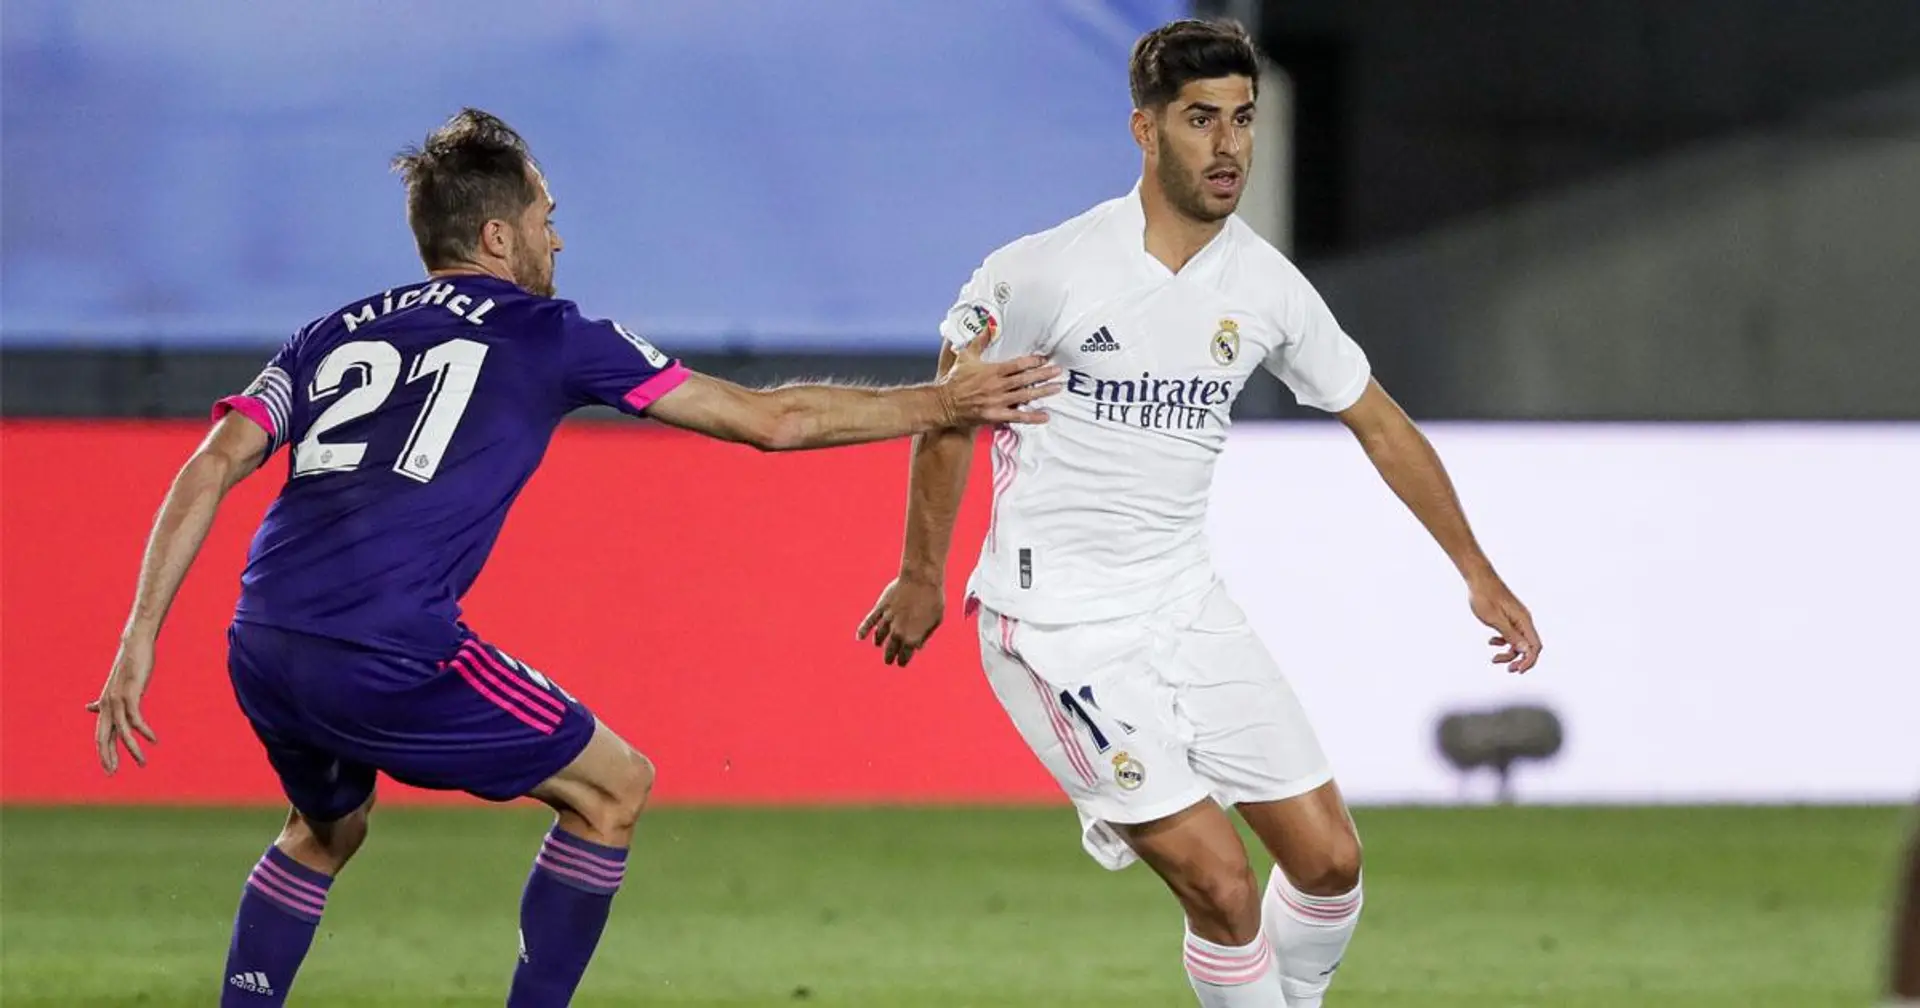 Levante vs Real Madrid: nouvelles des équipes, compos probables, prévisions de score et plus - avant match